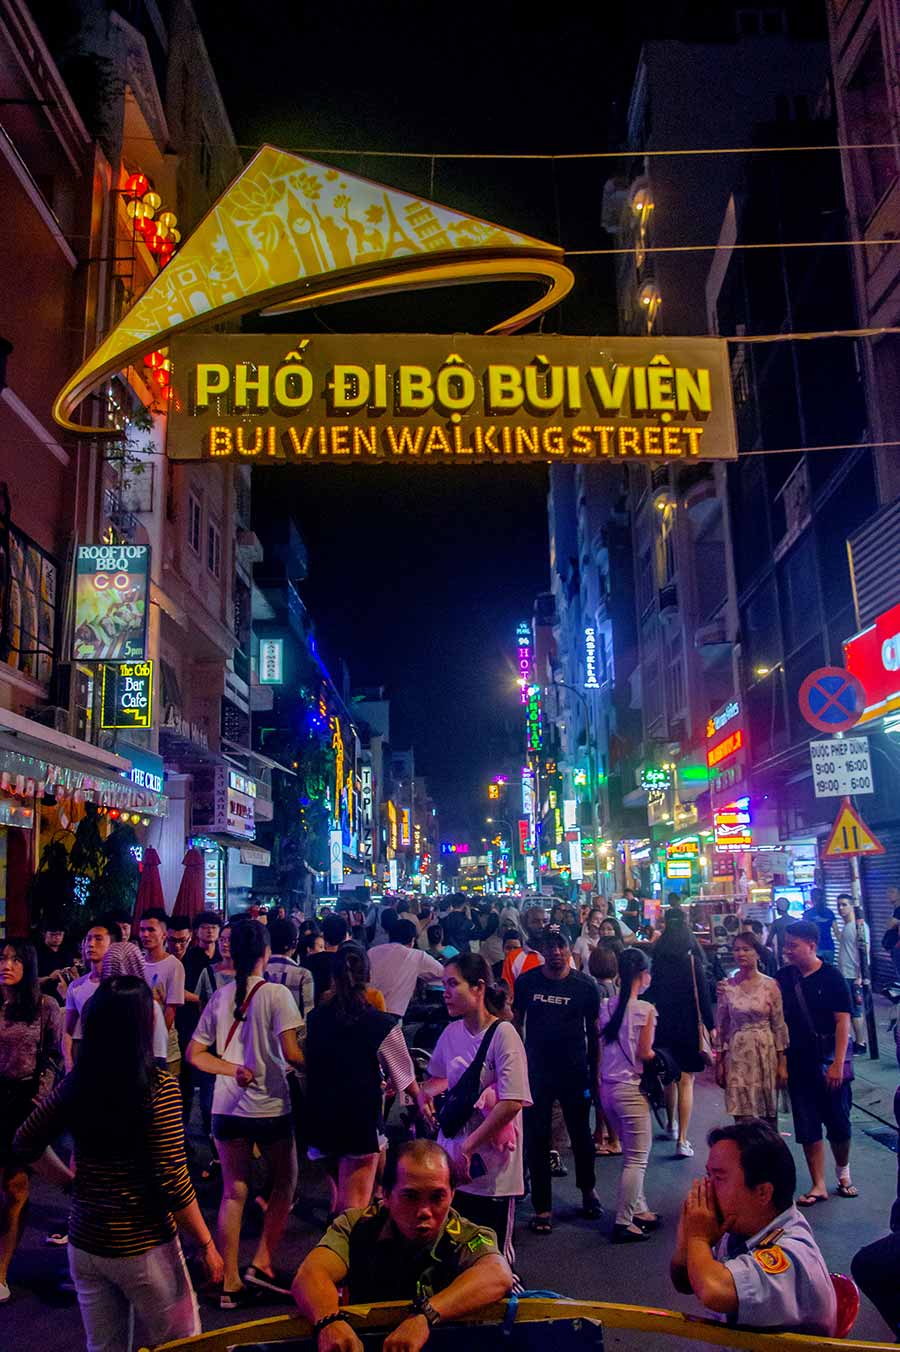 Bui Vien walking street